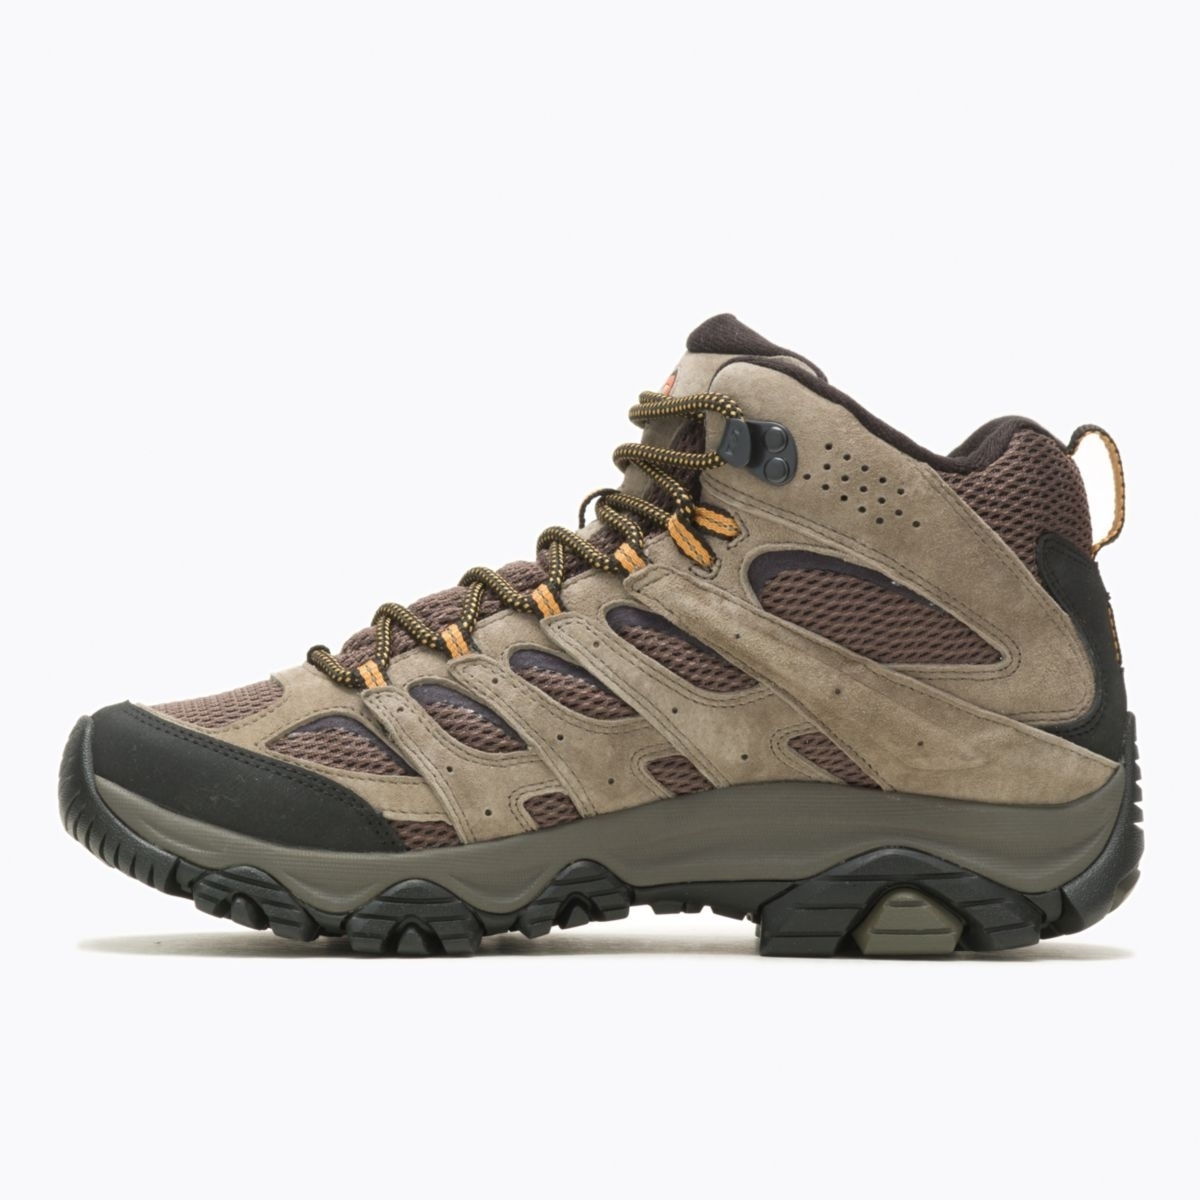 Merrell Men's Moab 3 Mid GORE-TEX Hiking Boot Walnut - J035795 WALNUT - WALNUT, 11